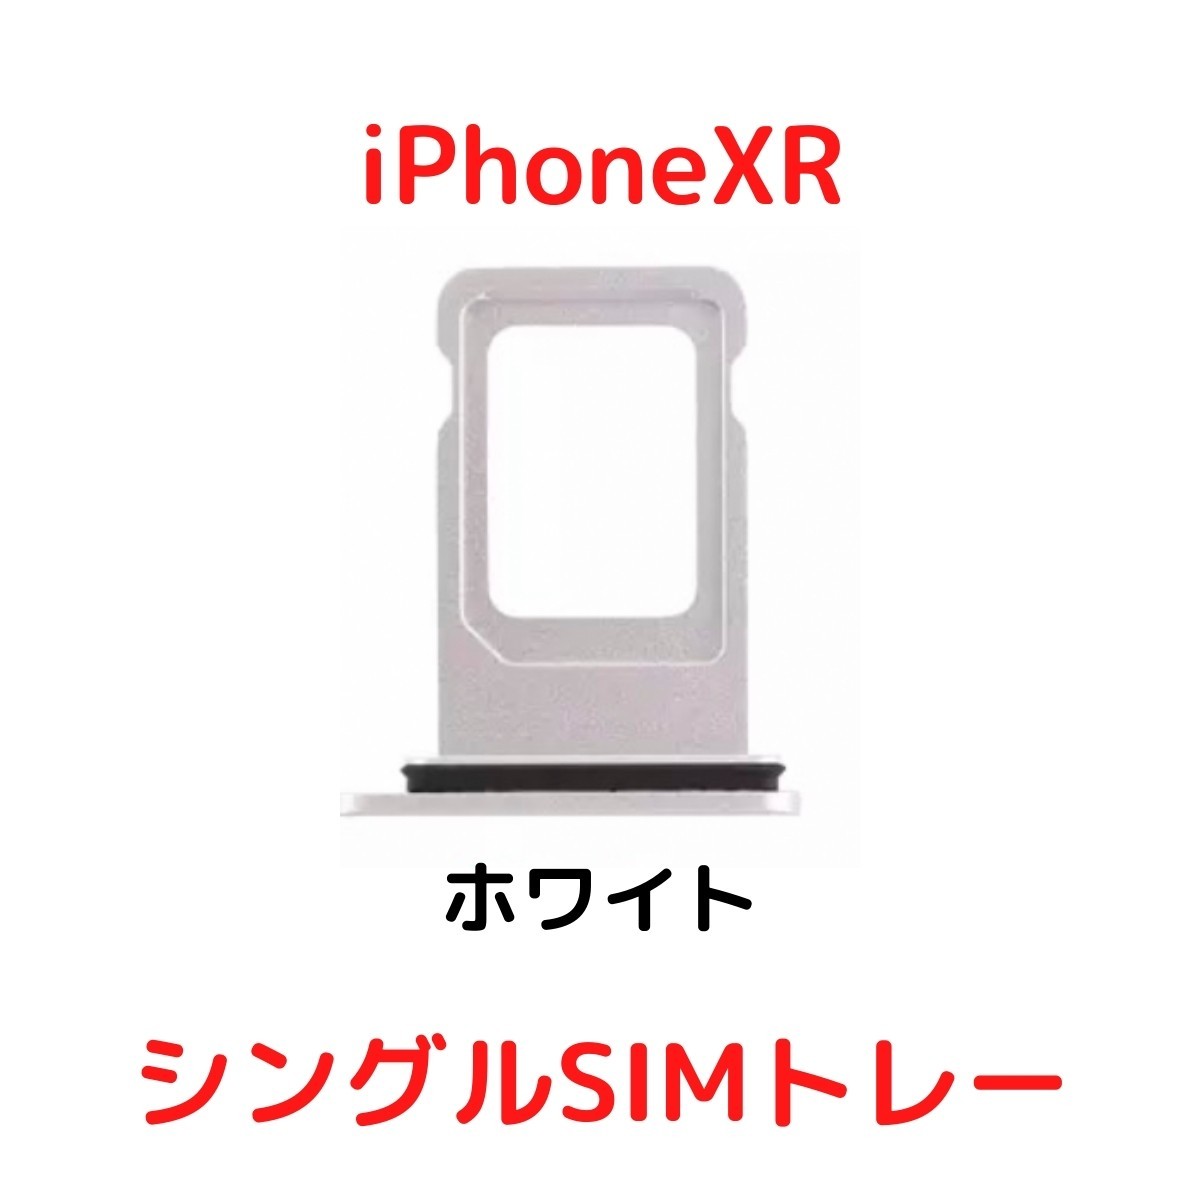 【選べる6色】 iPhoneXR レッド ブルー イエロー ブラック ホワイト コーラル シングルSIM 防水リング付き SIMトレー SIMスロット_画像4